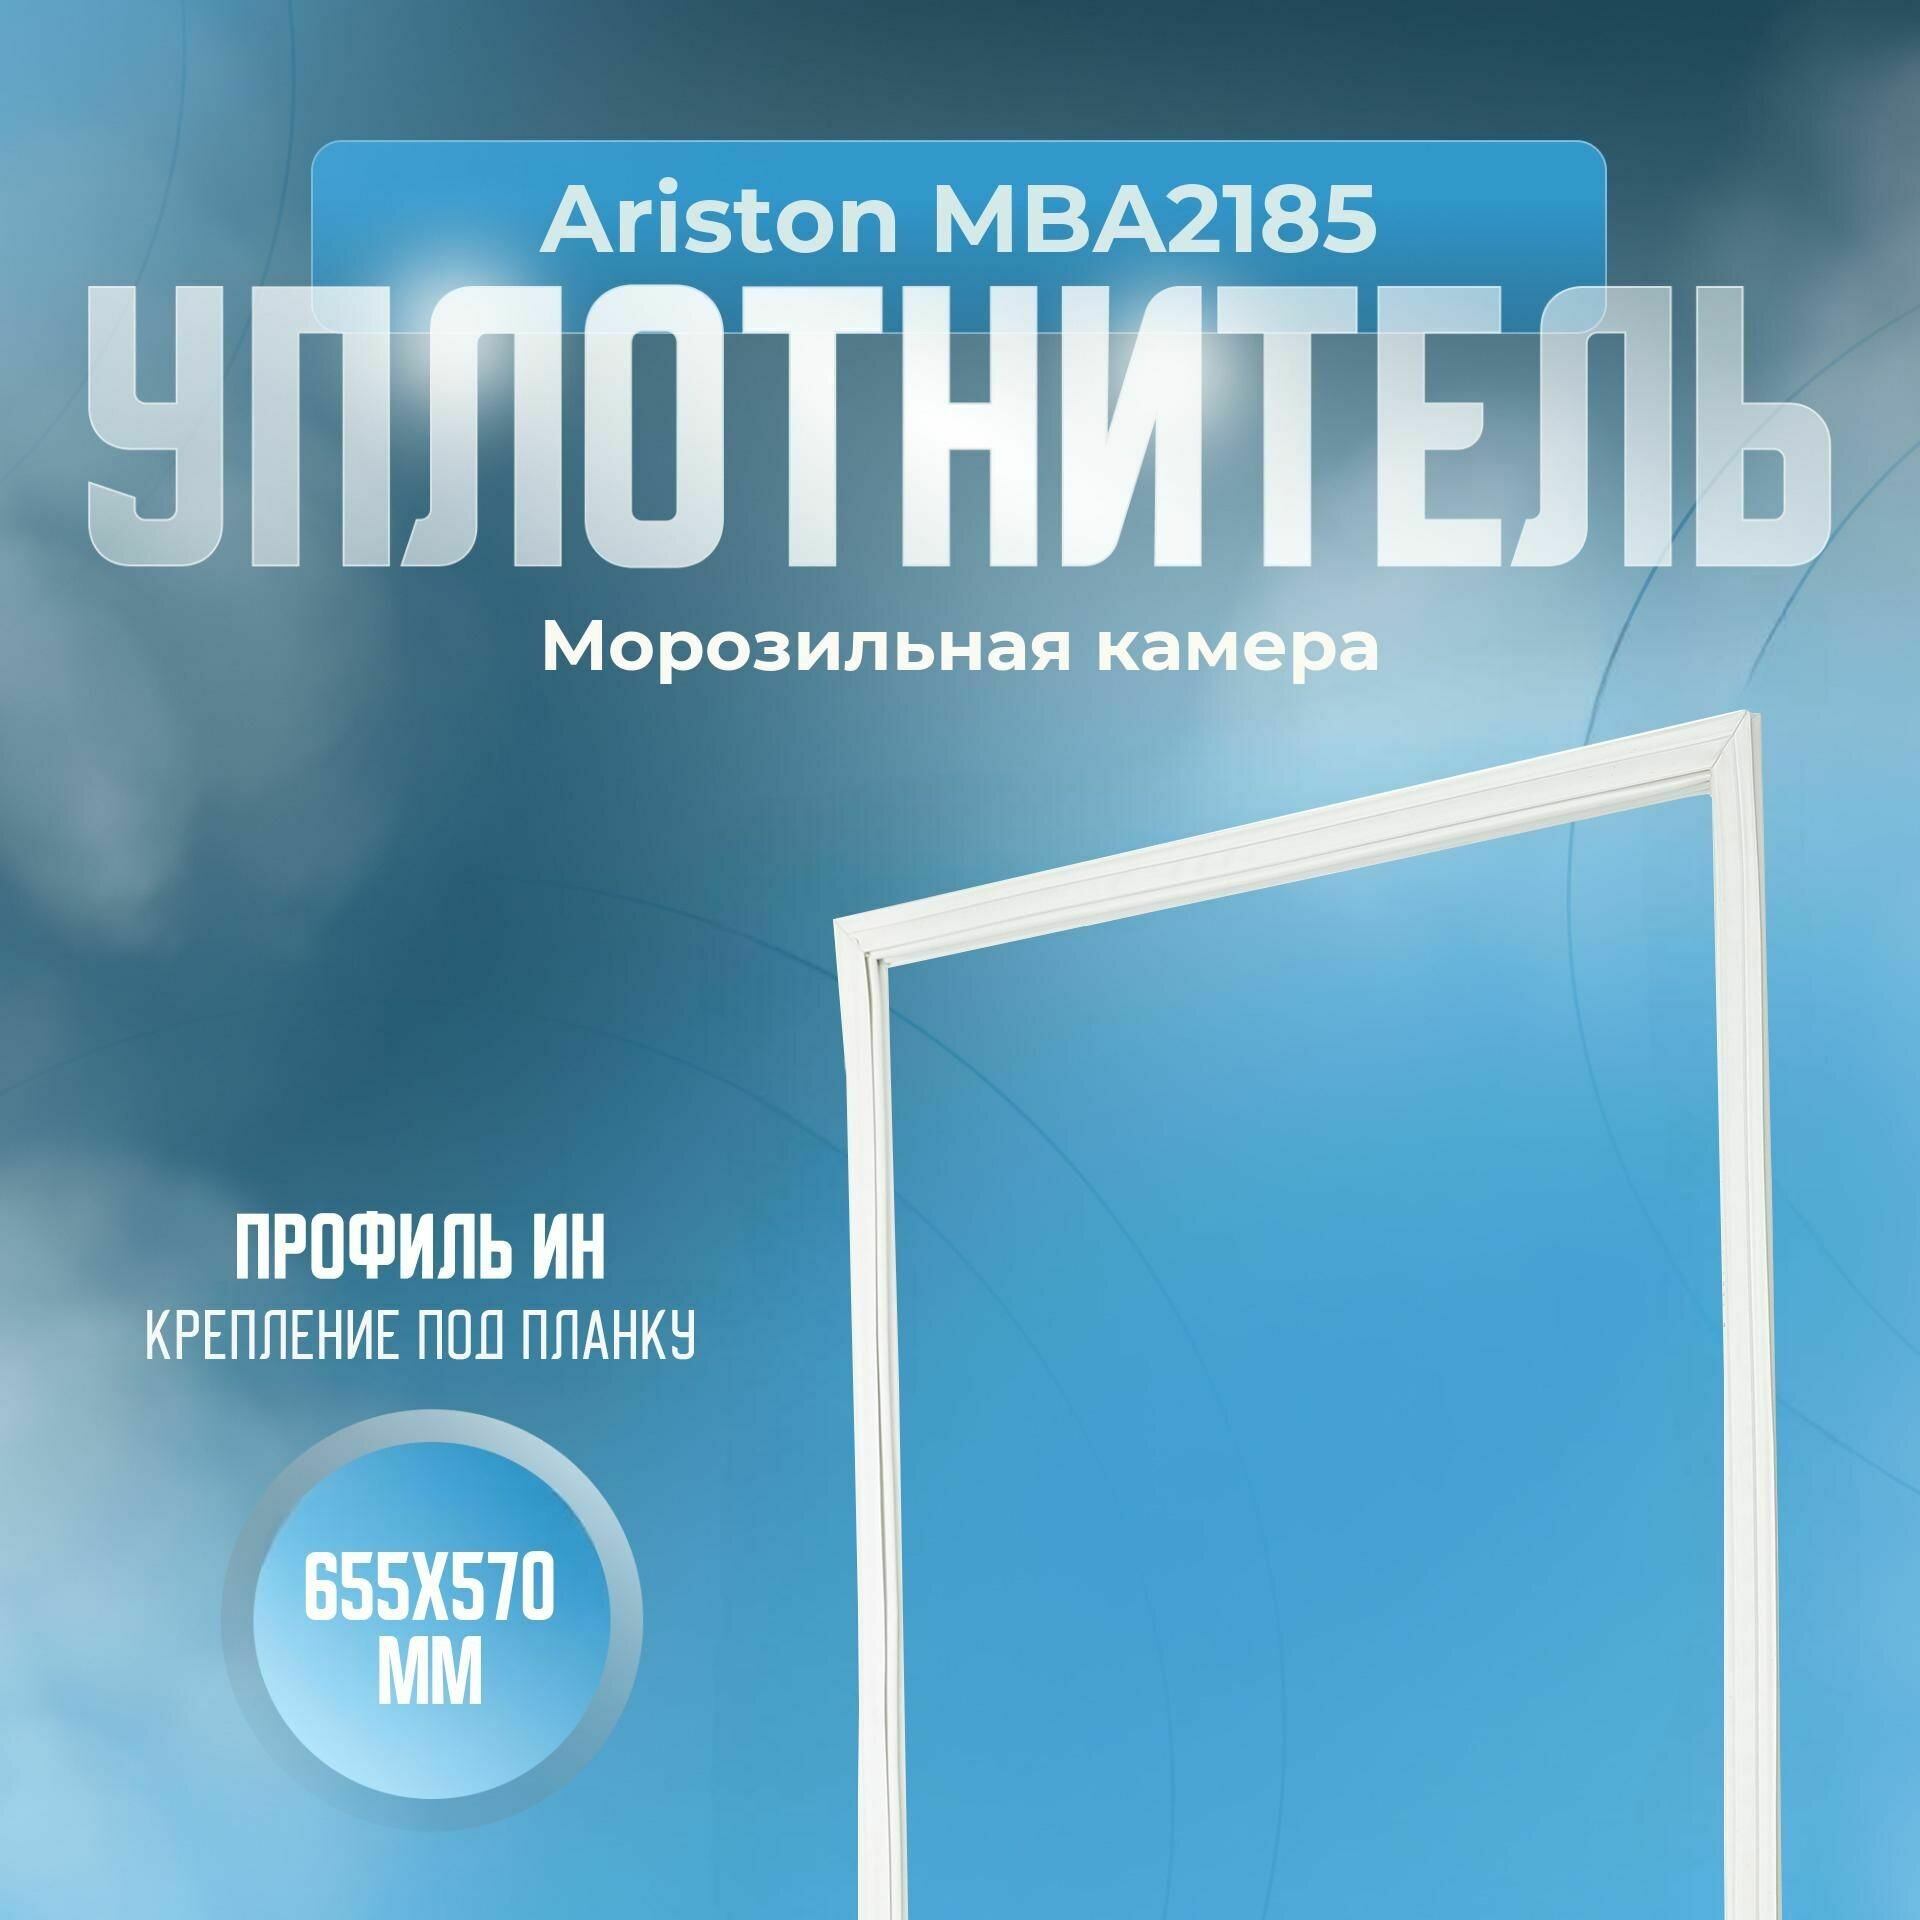 Уплотнитель Ariston MBA2185. м. к, Размер - 655x570 мм. ИН